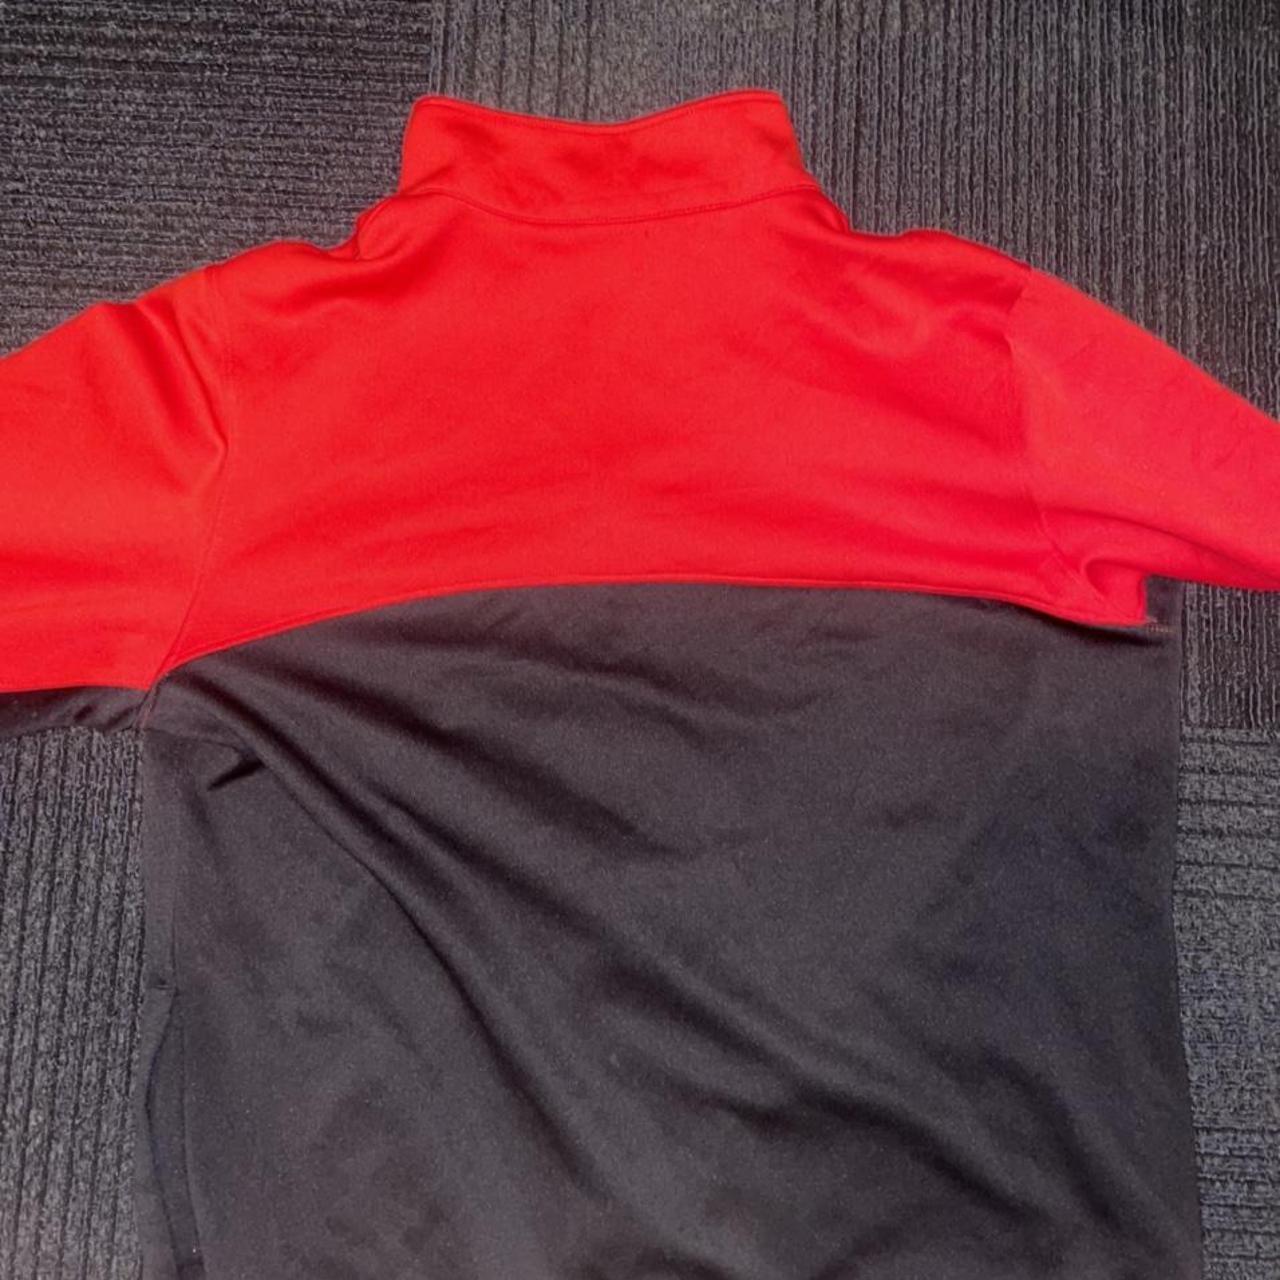 Nike Men's Red and Black Jacket | Depop